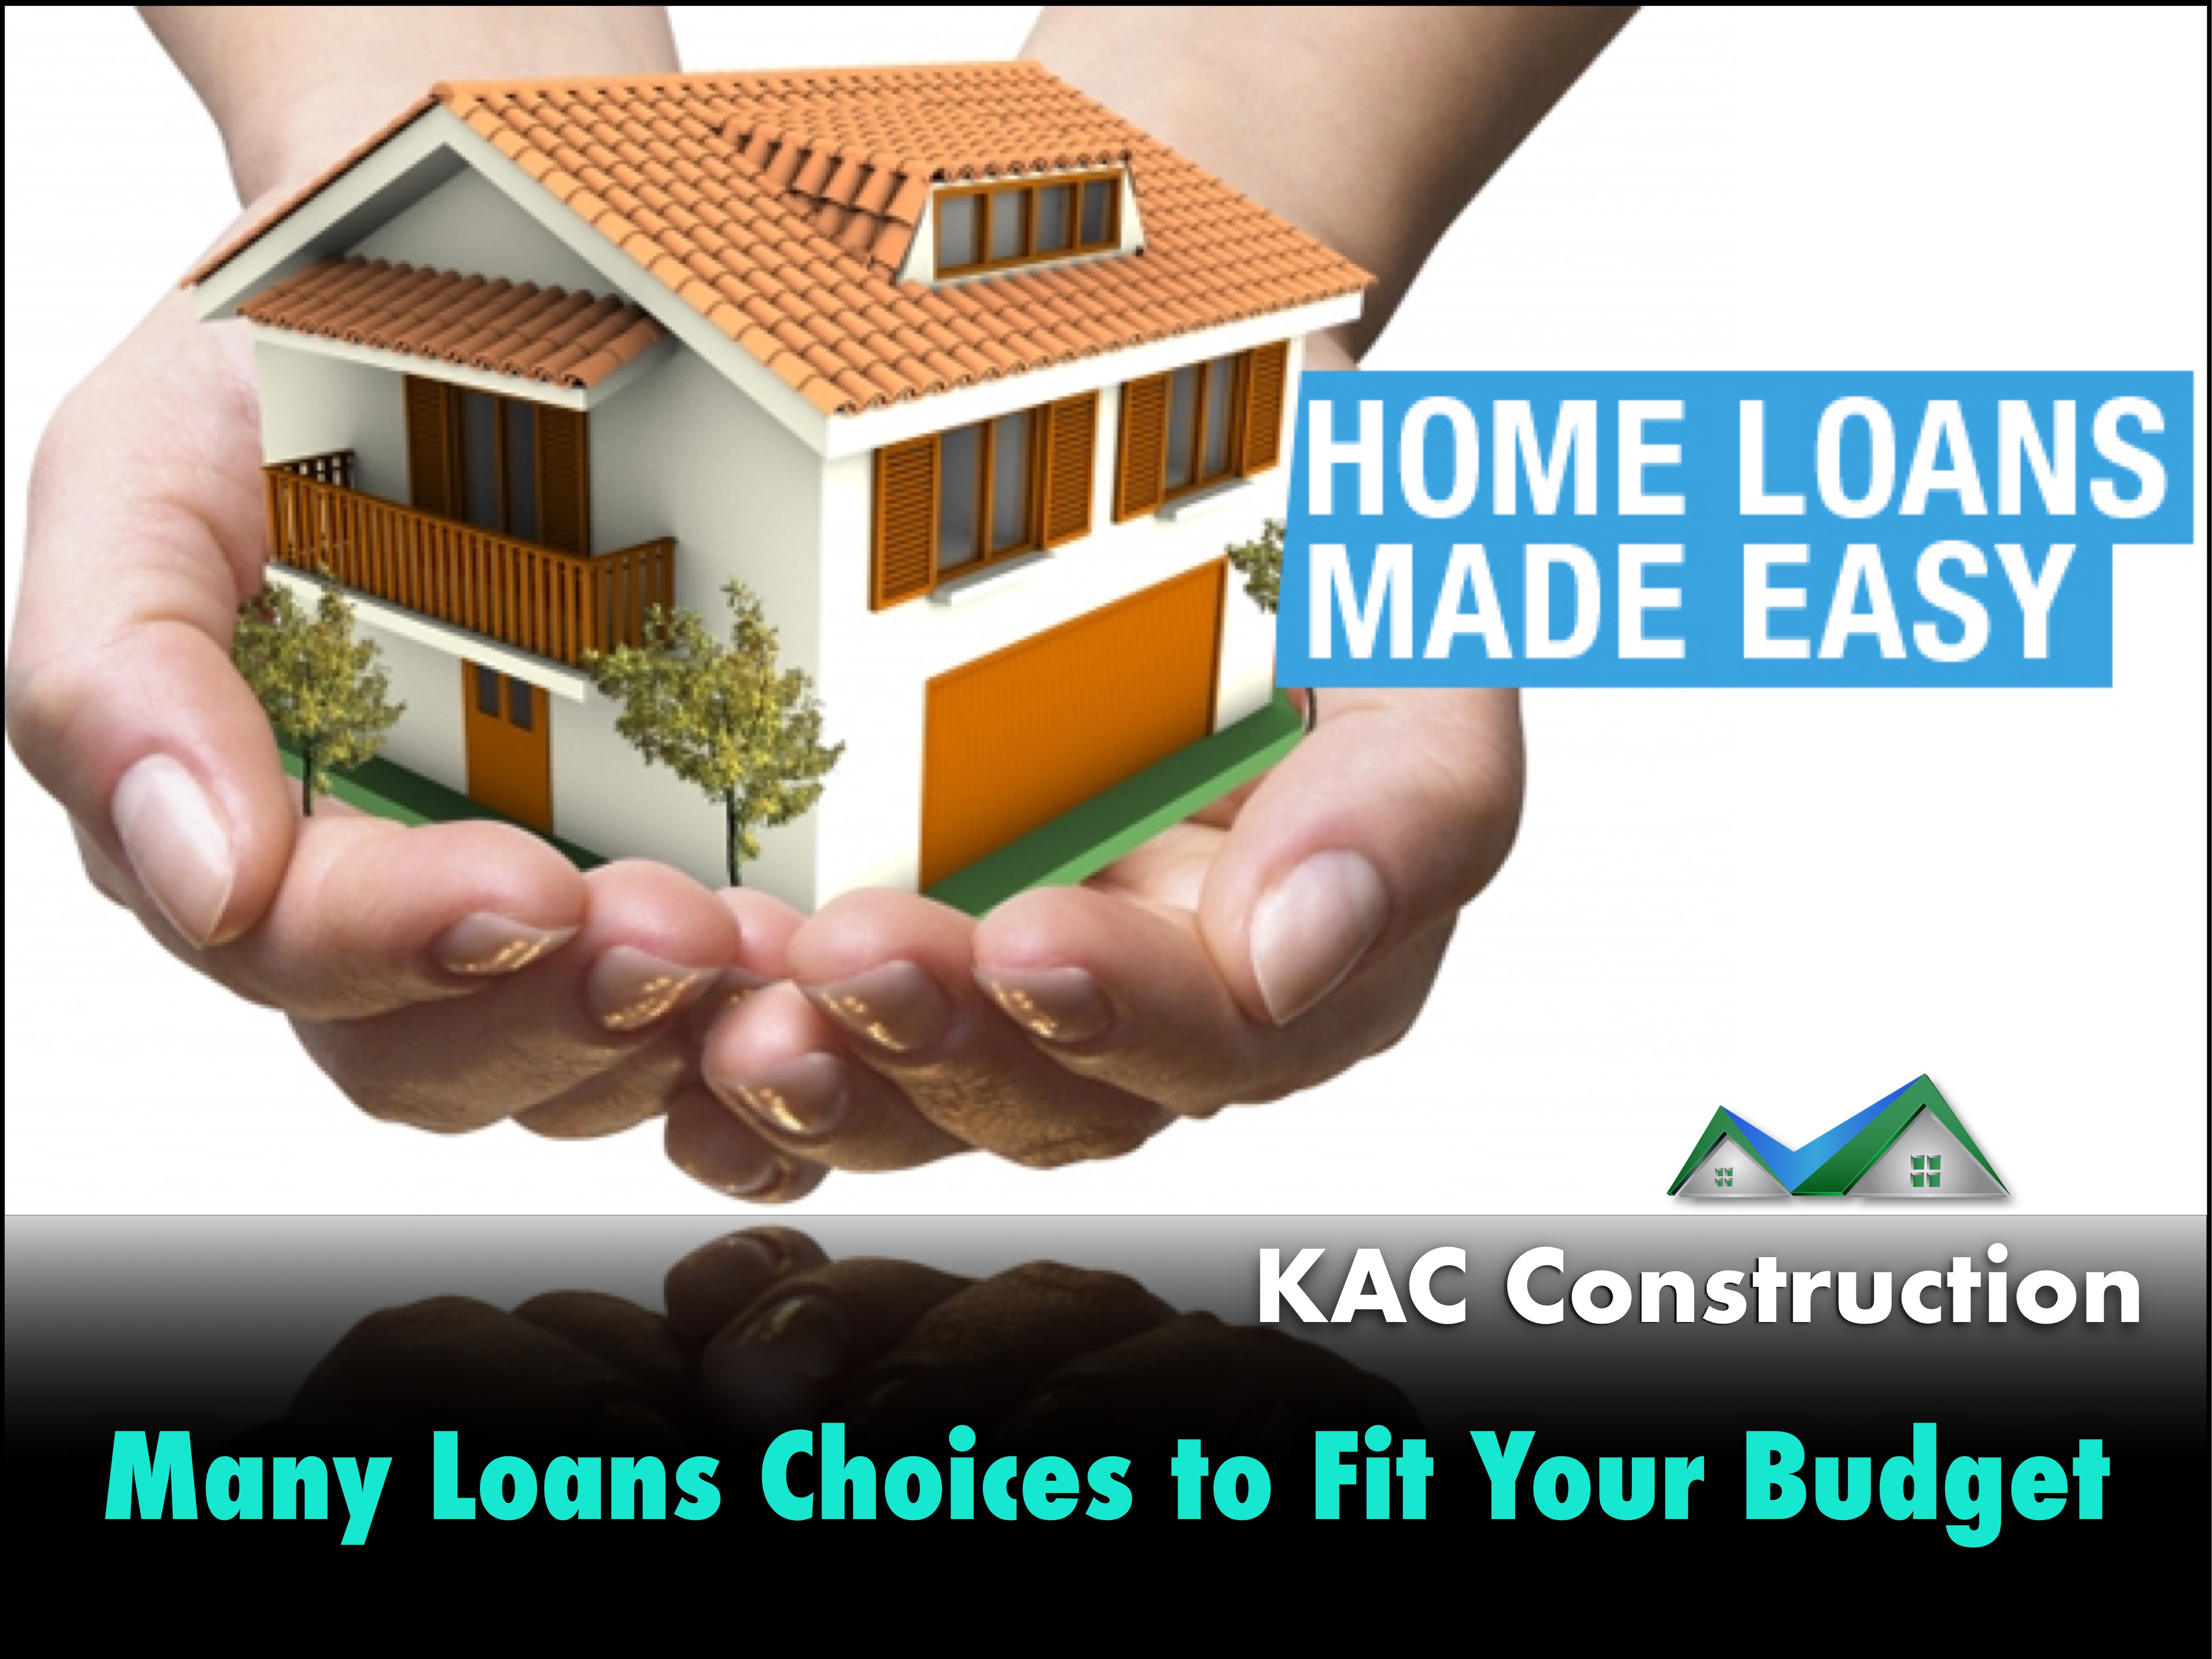 Home loan, home loans ri, home repair loan, home repair Loan ri, roof Loan ri, roof repair loan, roof repair Loan ri,